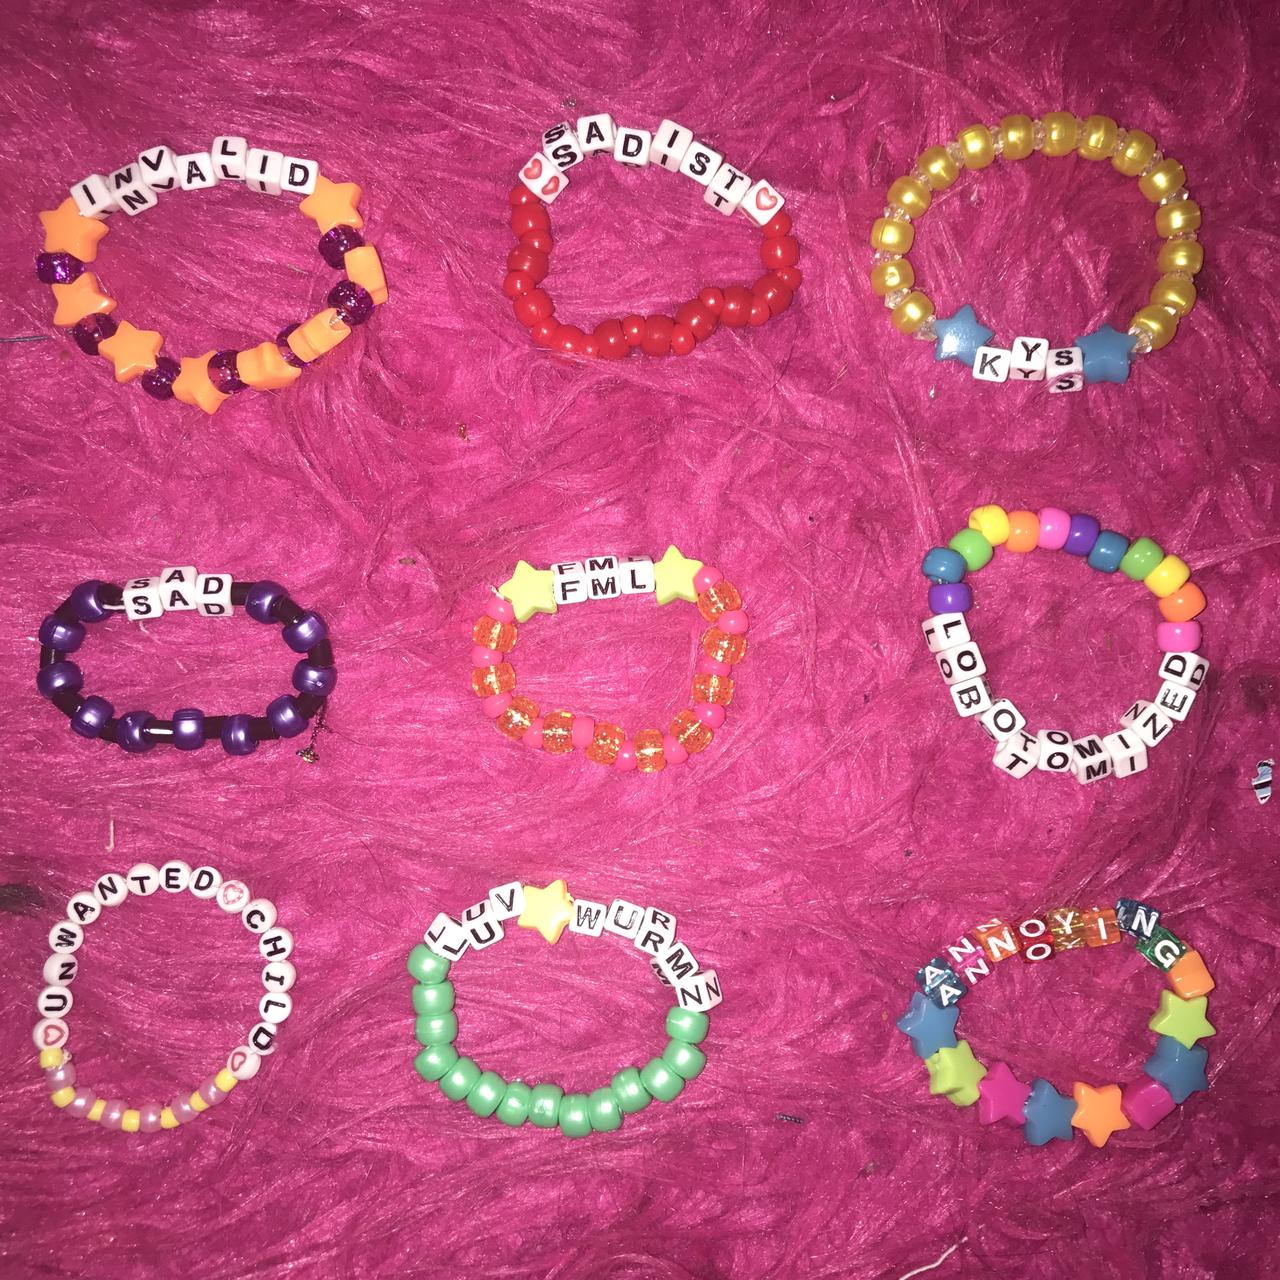 Rave bracelets Pony beads/friendship bracelets Free - Depop